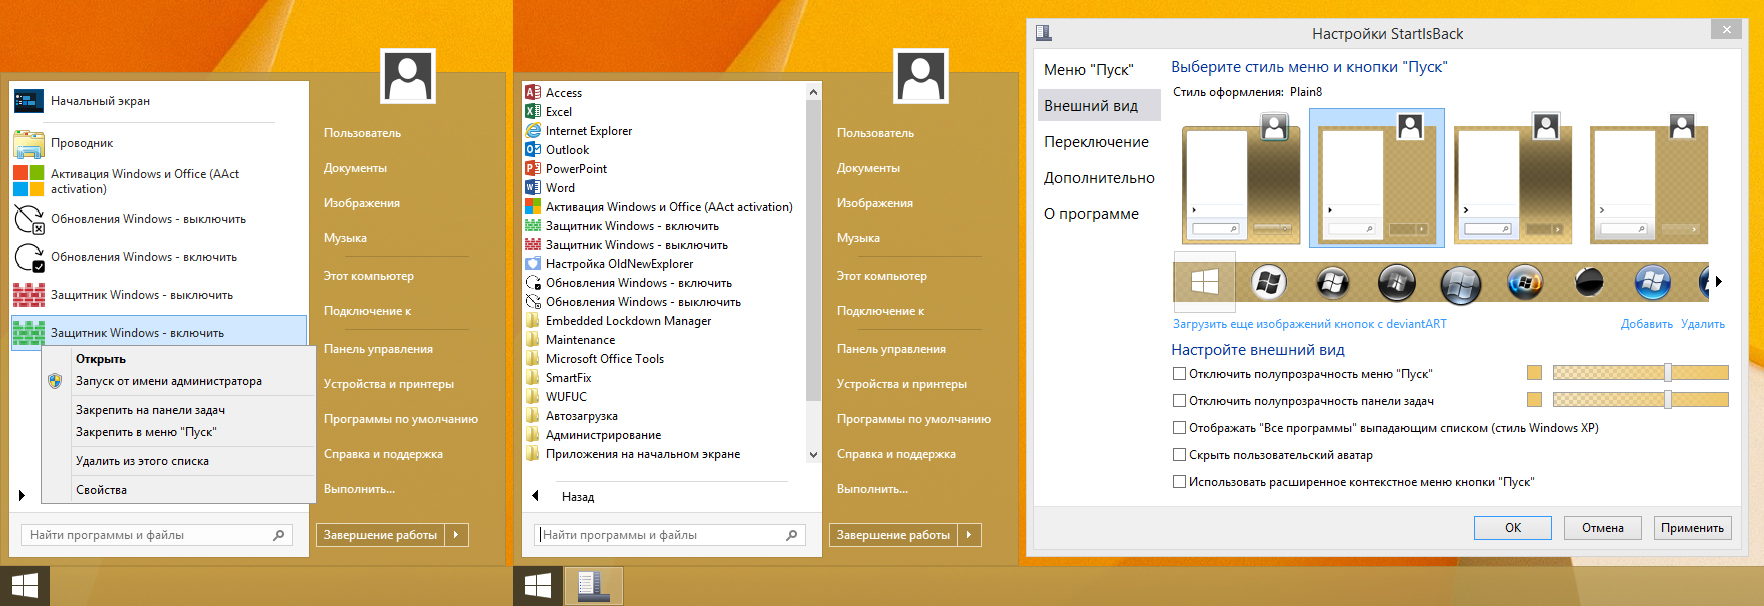 Windows 8.1 (x86/x64) 40in1 +/- Office 2021 by Eagle123 (01.2022) [Ru/En]